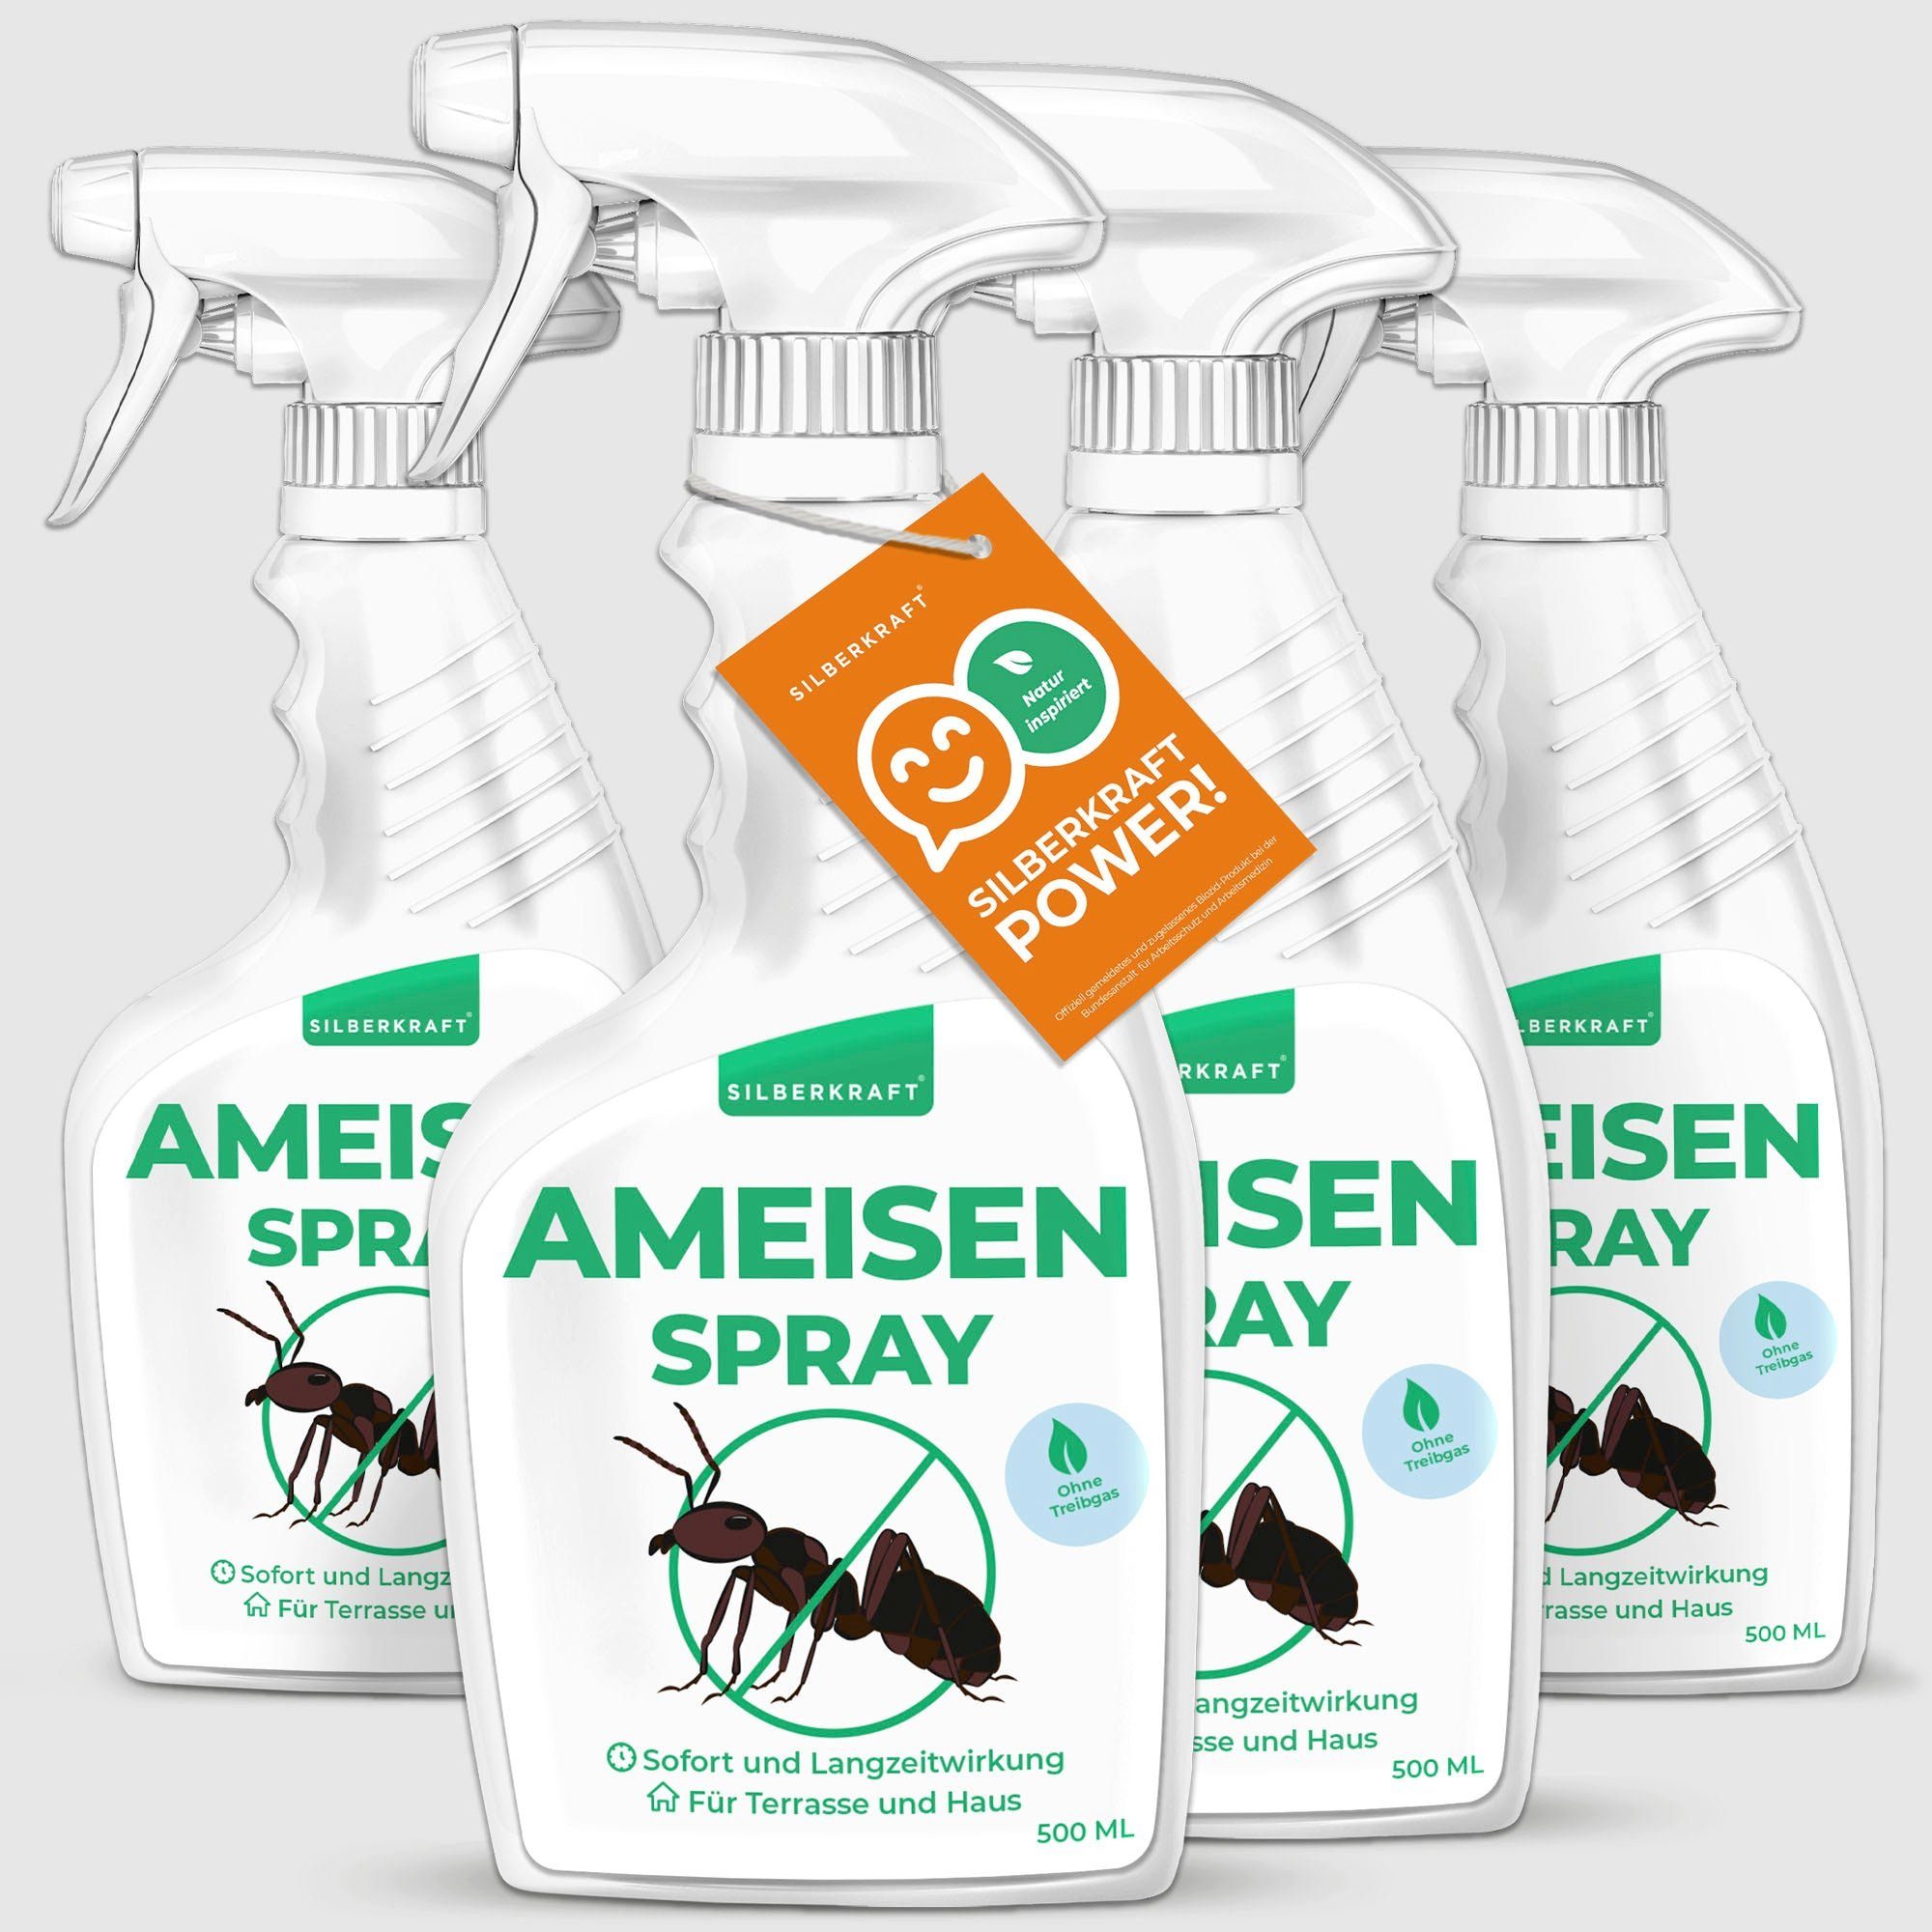 Anti ml, Ameisenspray, Insektenspray 500 Silberkraft 1-St. Ameisen Spray -